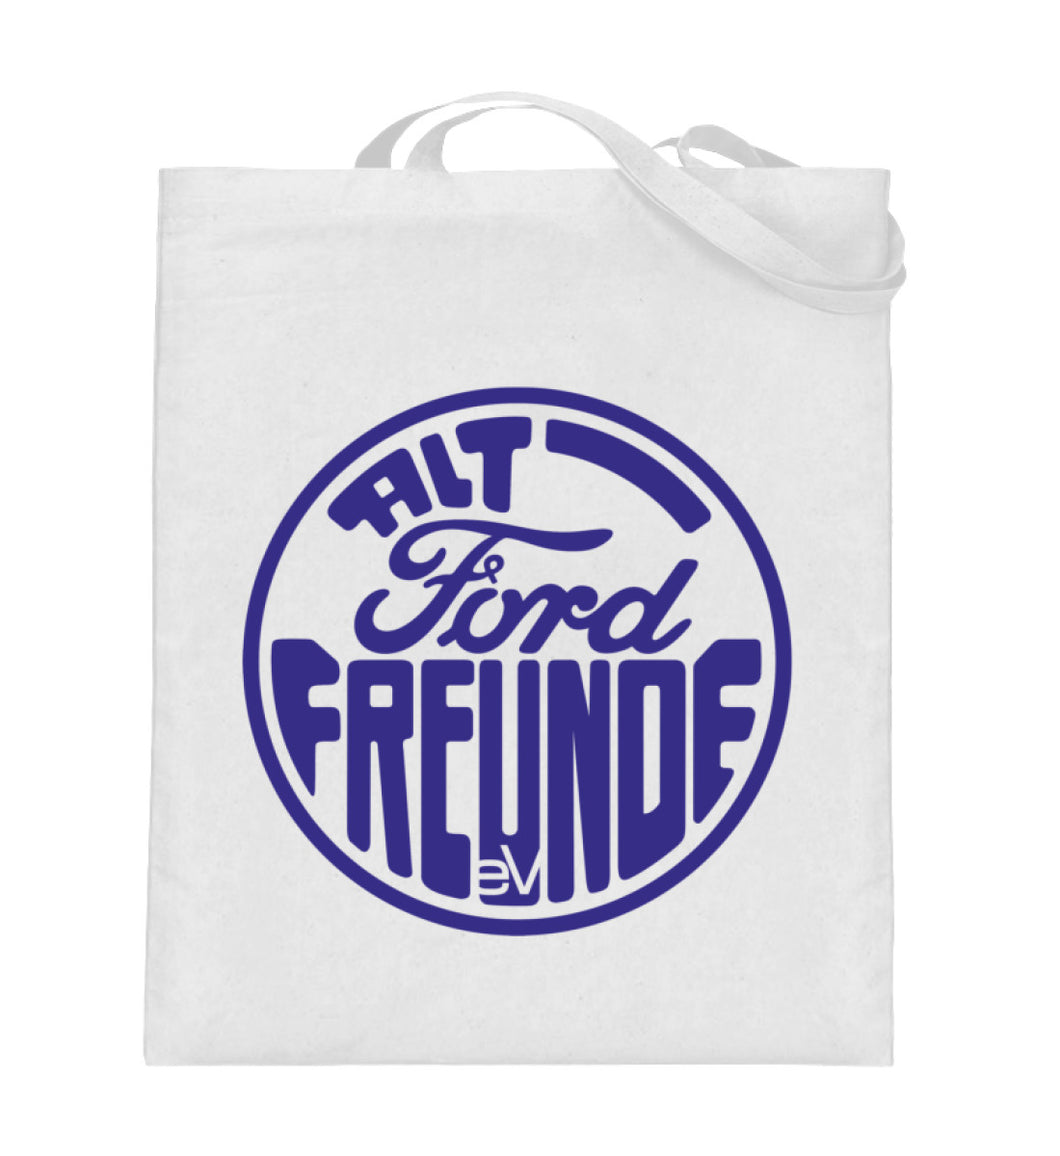 Alt-Ford-Freunde - Tragetasche mit langen Henkeln